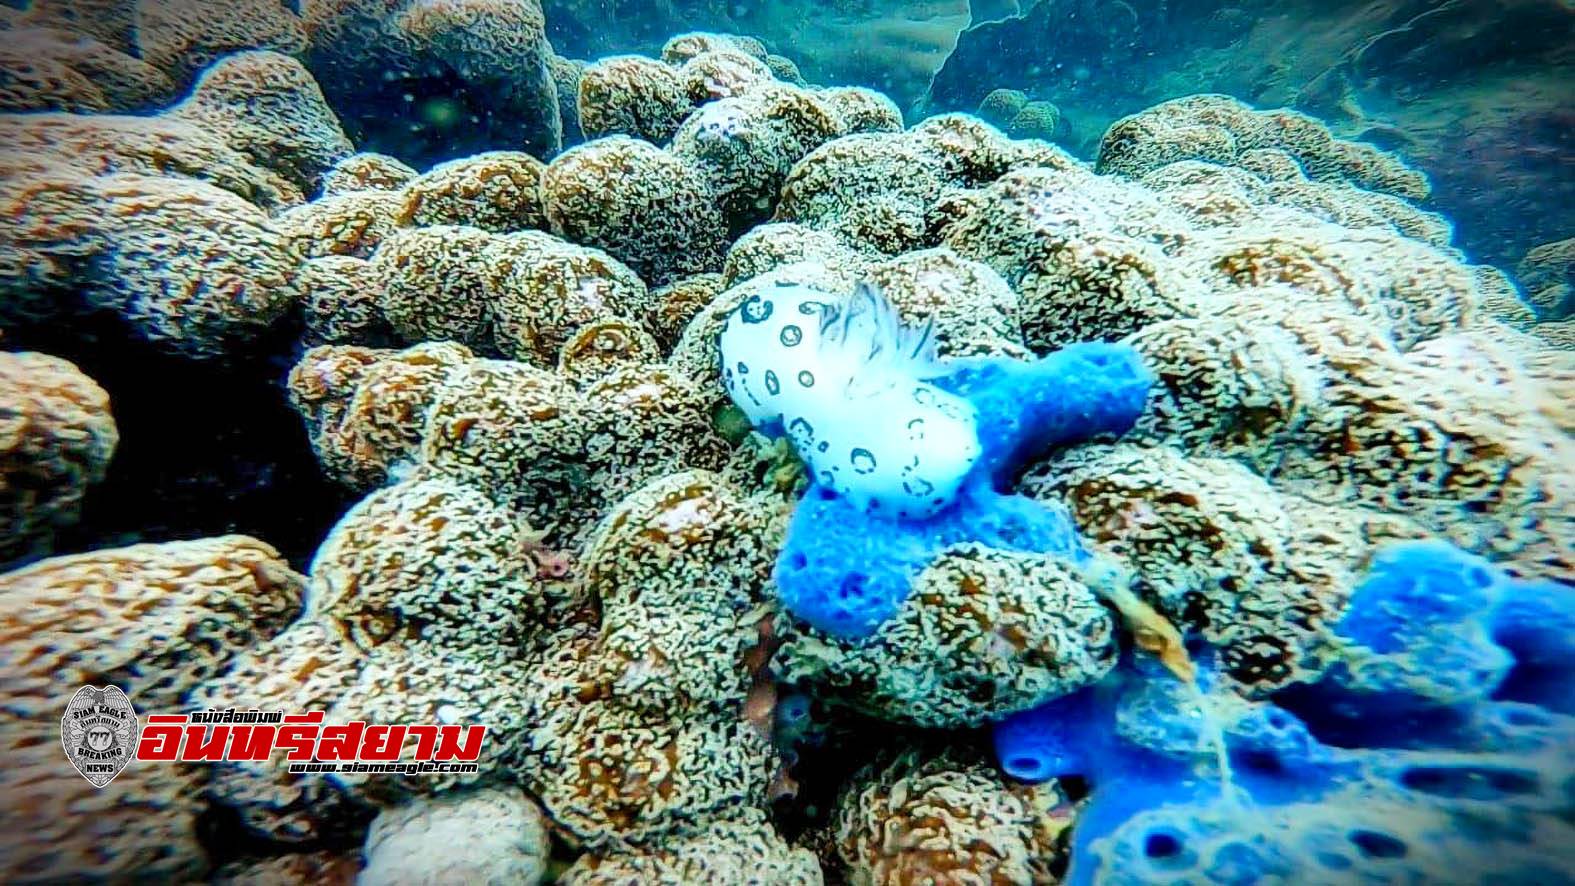 ประจวบคีรีขันธ์-อช.หาดวนกร สำรวจปะการังเกาะจานสภาพสมบูรณ์ พร้อมรับ นทท.ดำชมความสวยงาม